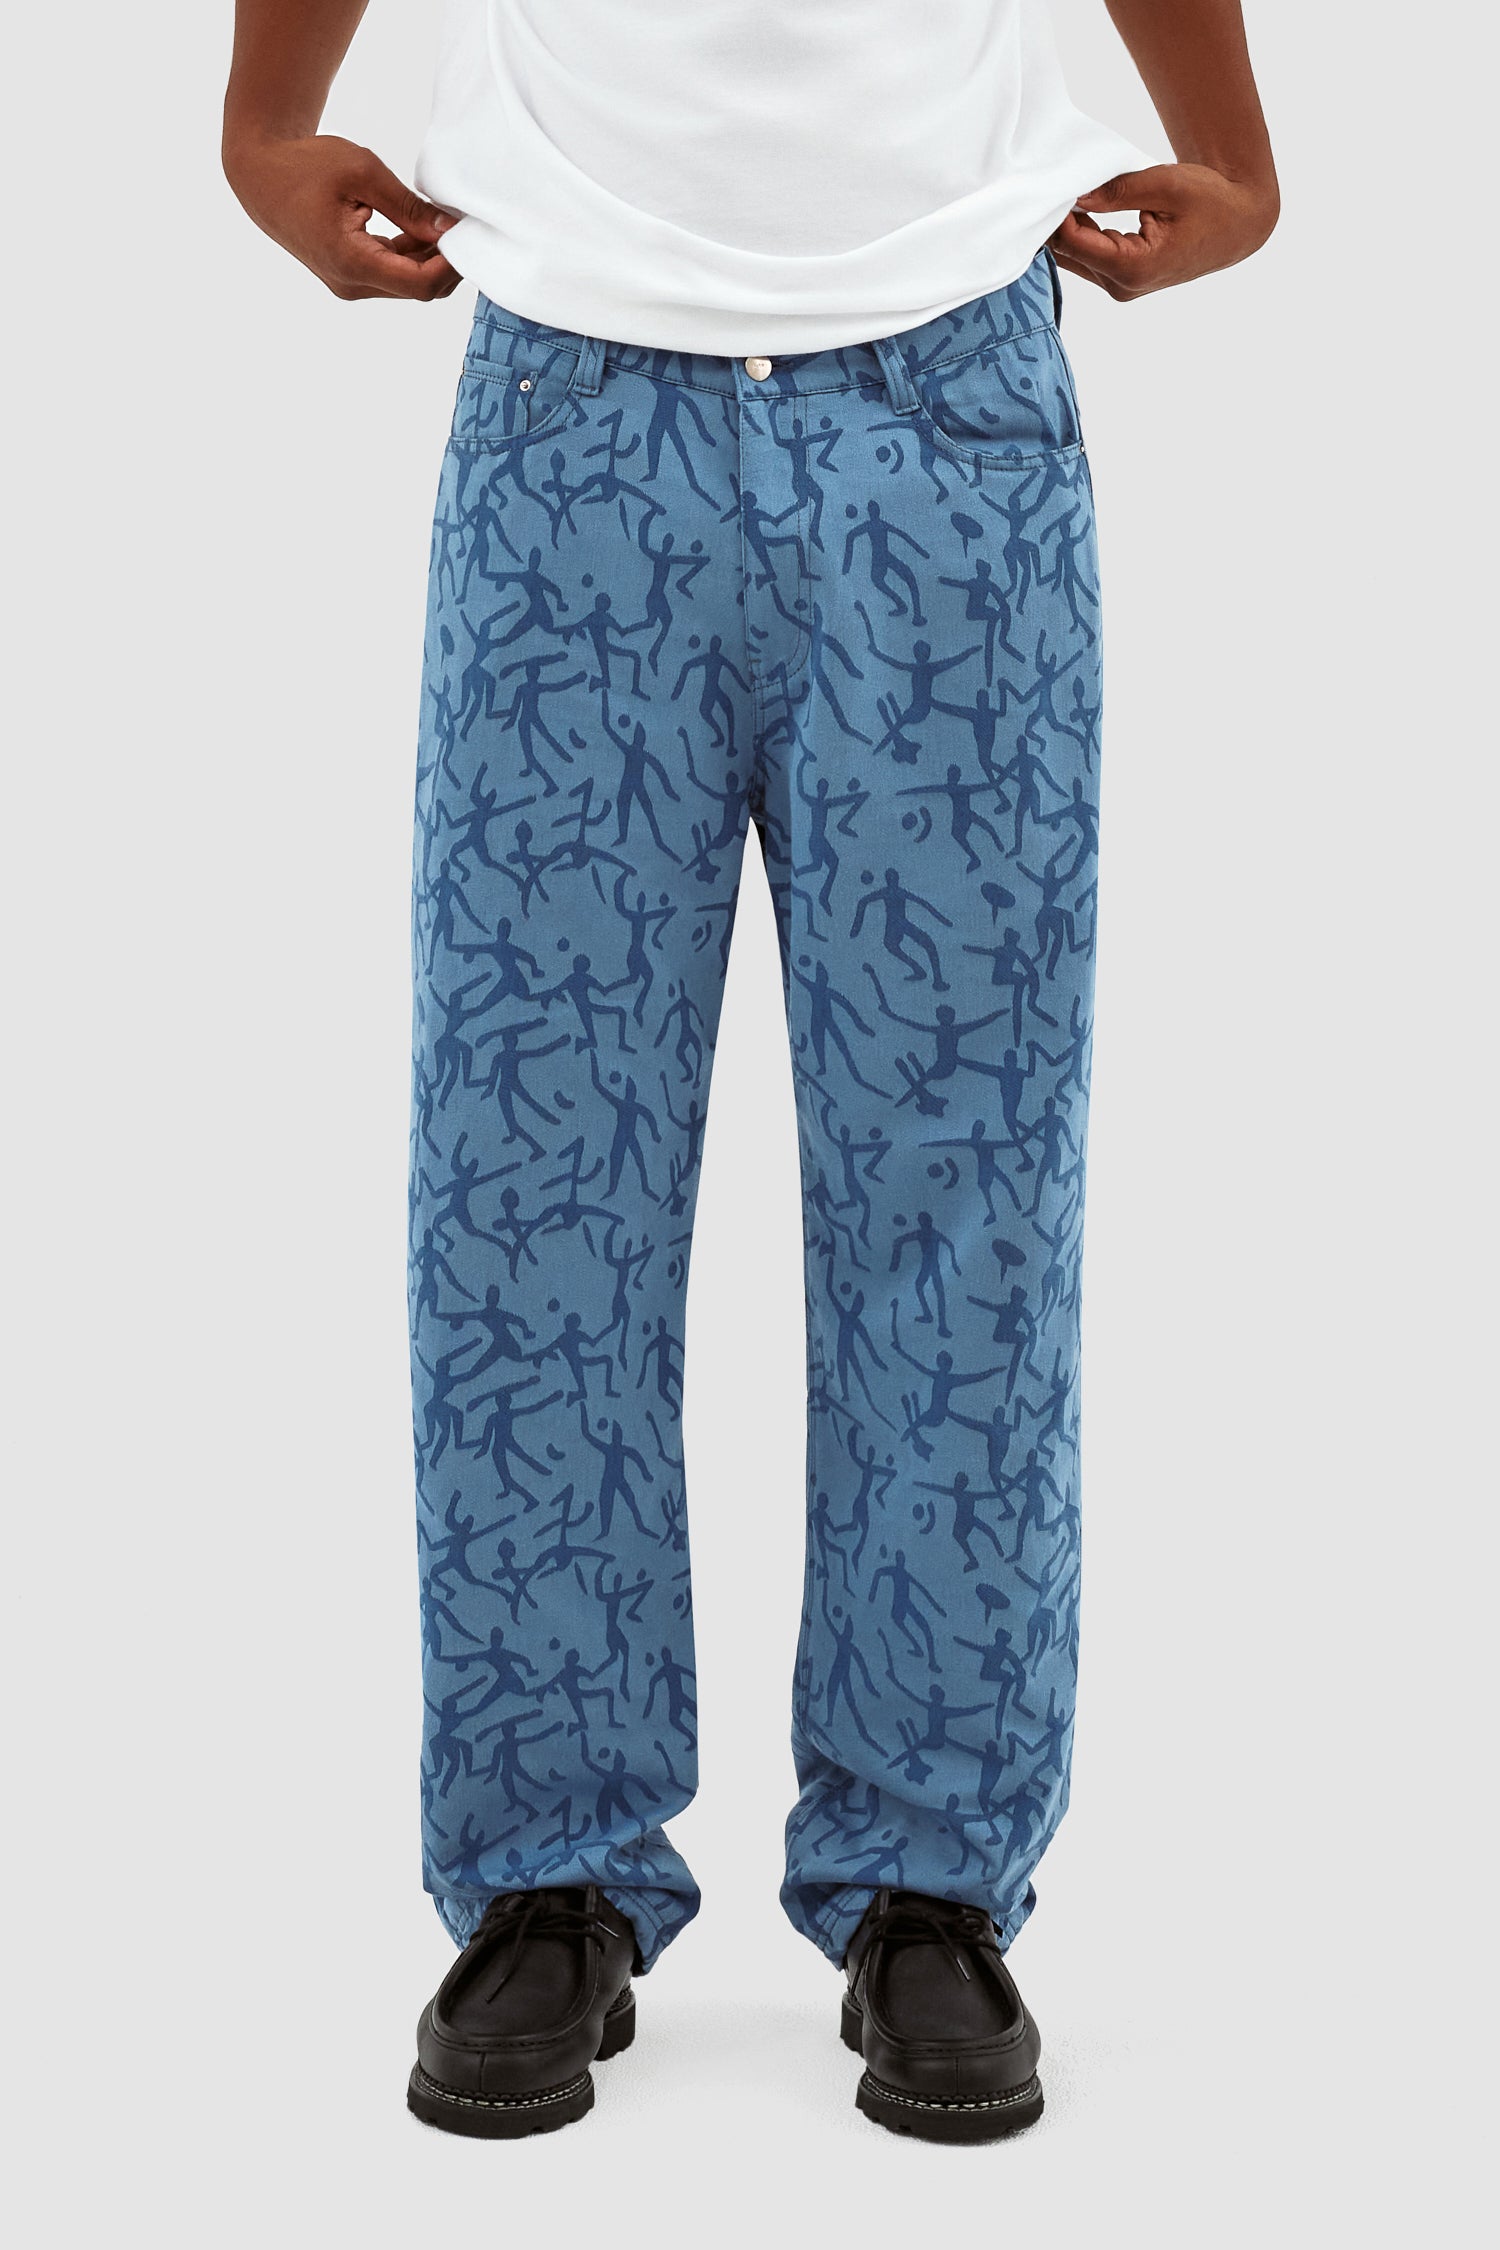 Pantalon James Allover - Bleu